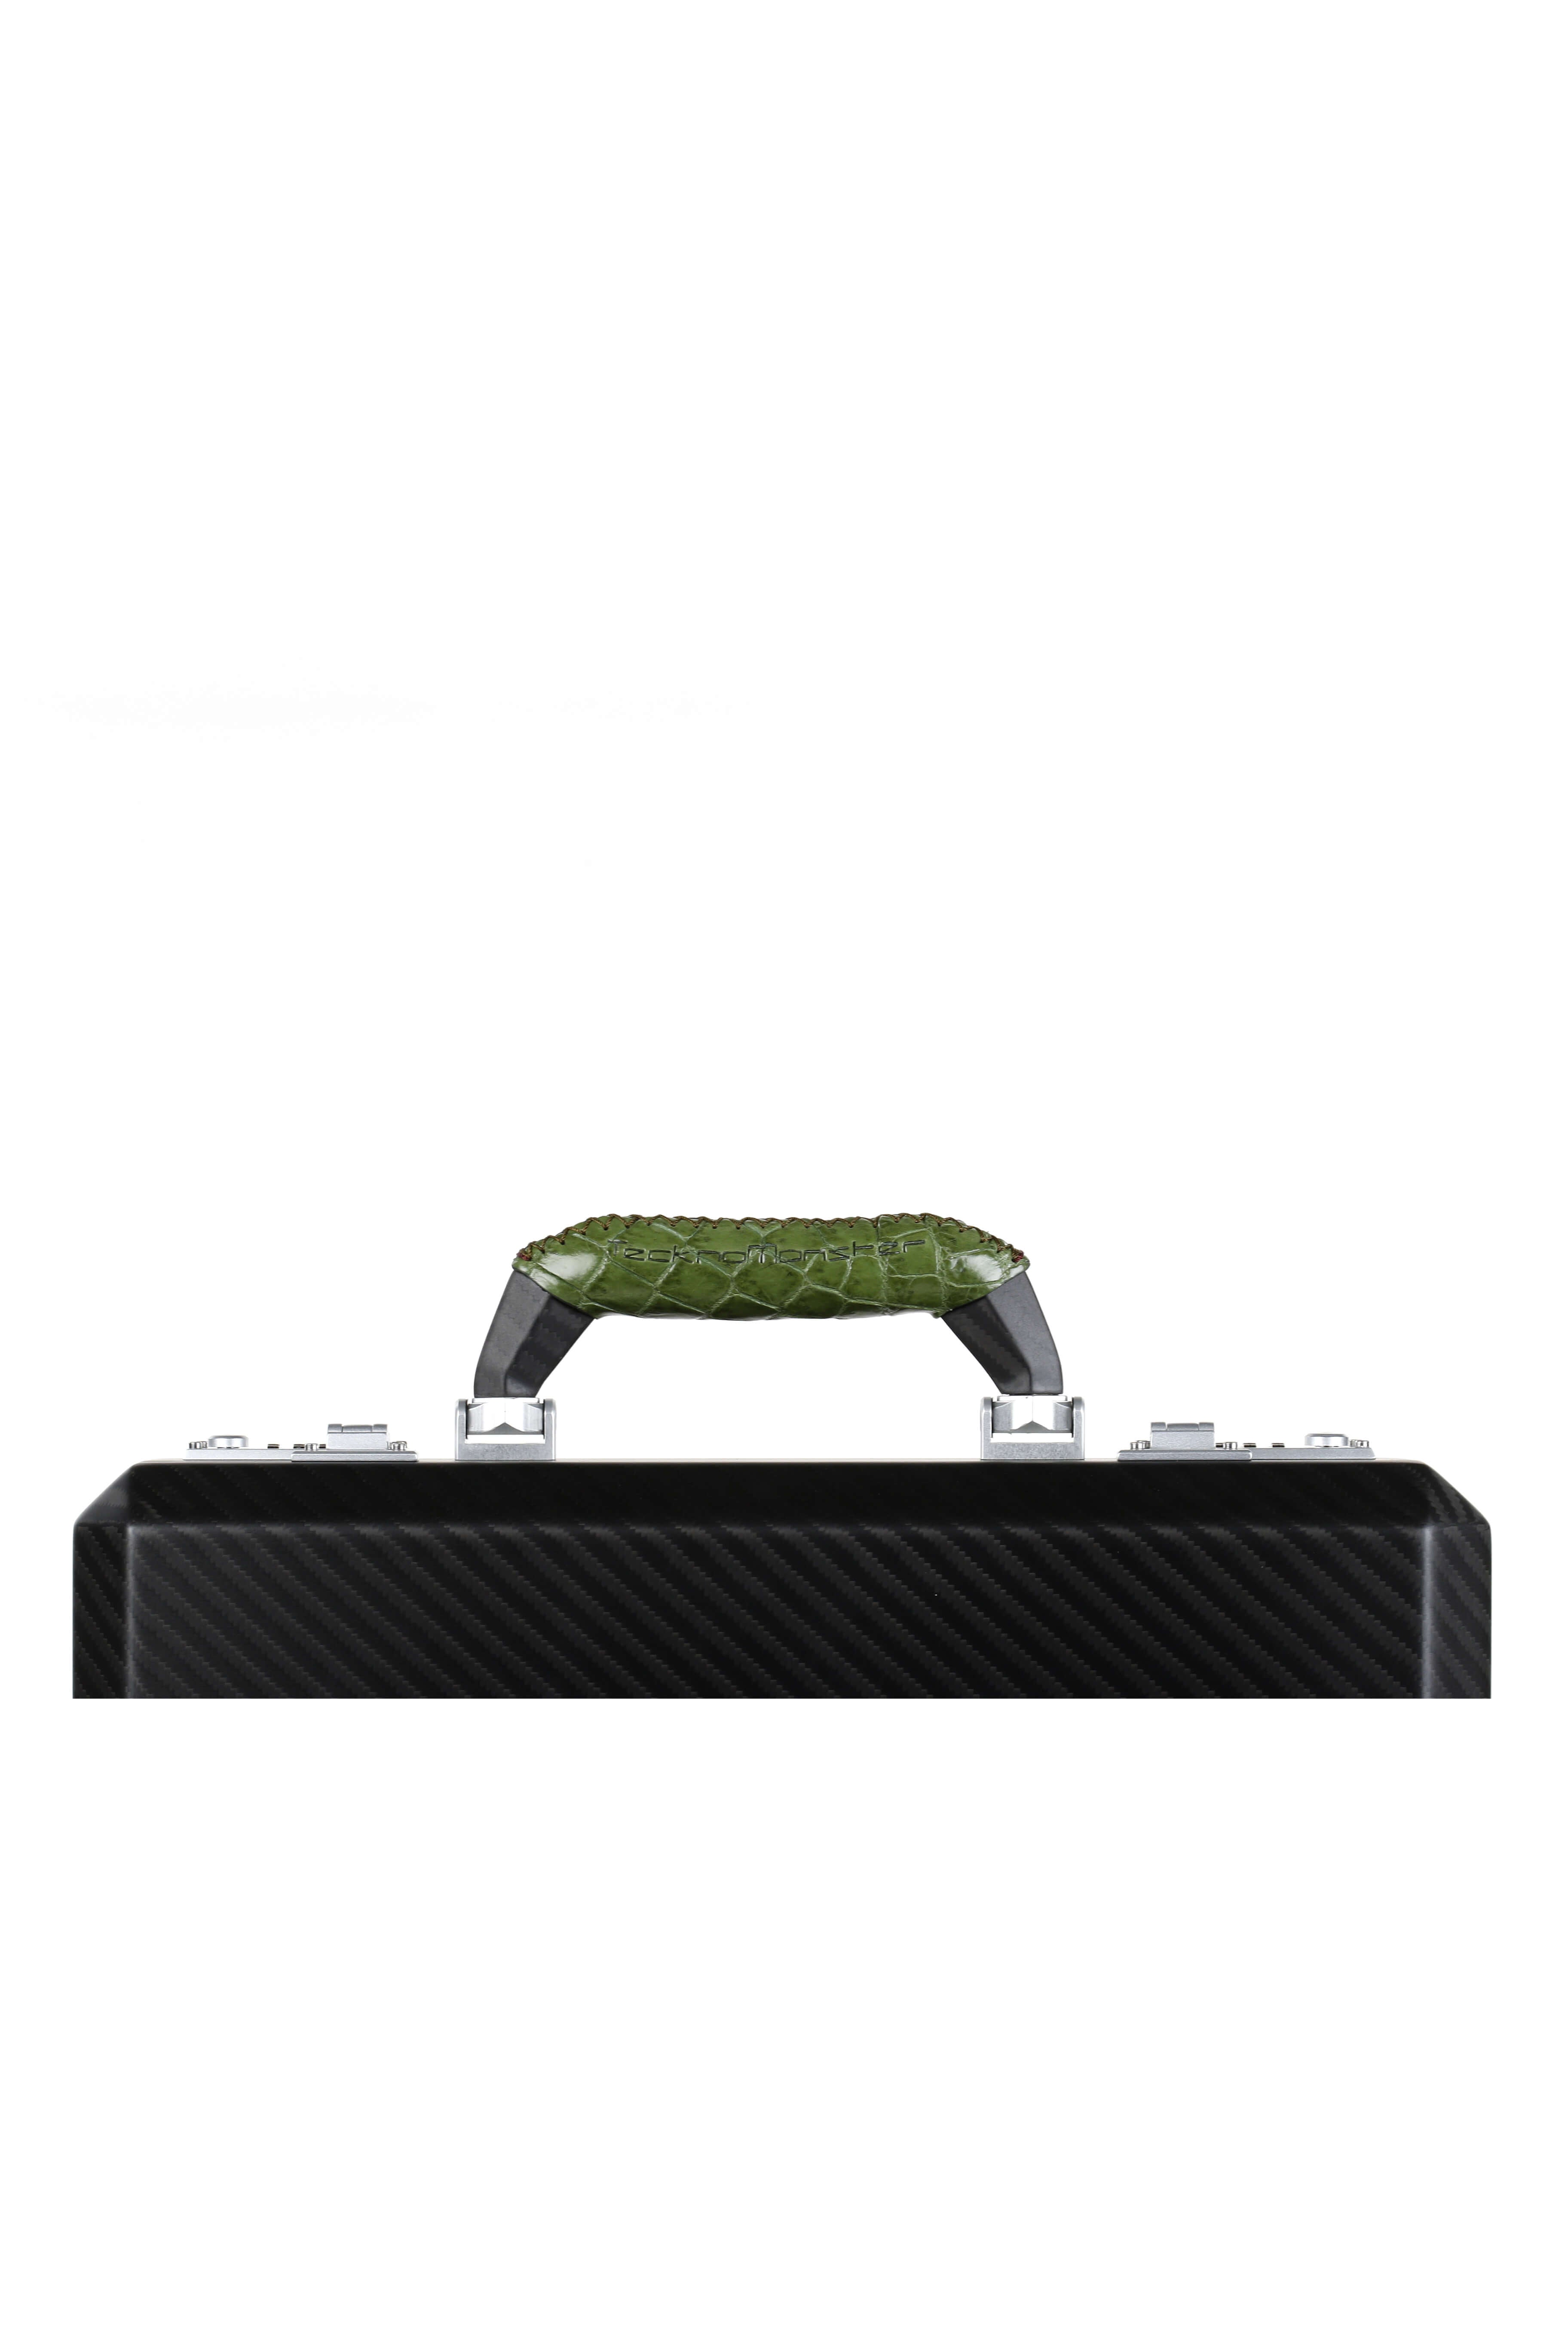 Cavok Mini Carbon Fiber Attache Case, Crocodile Green